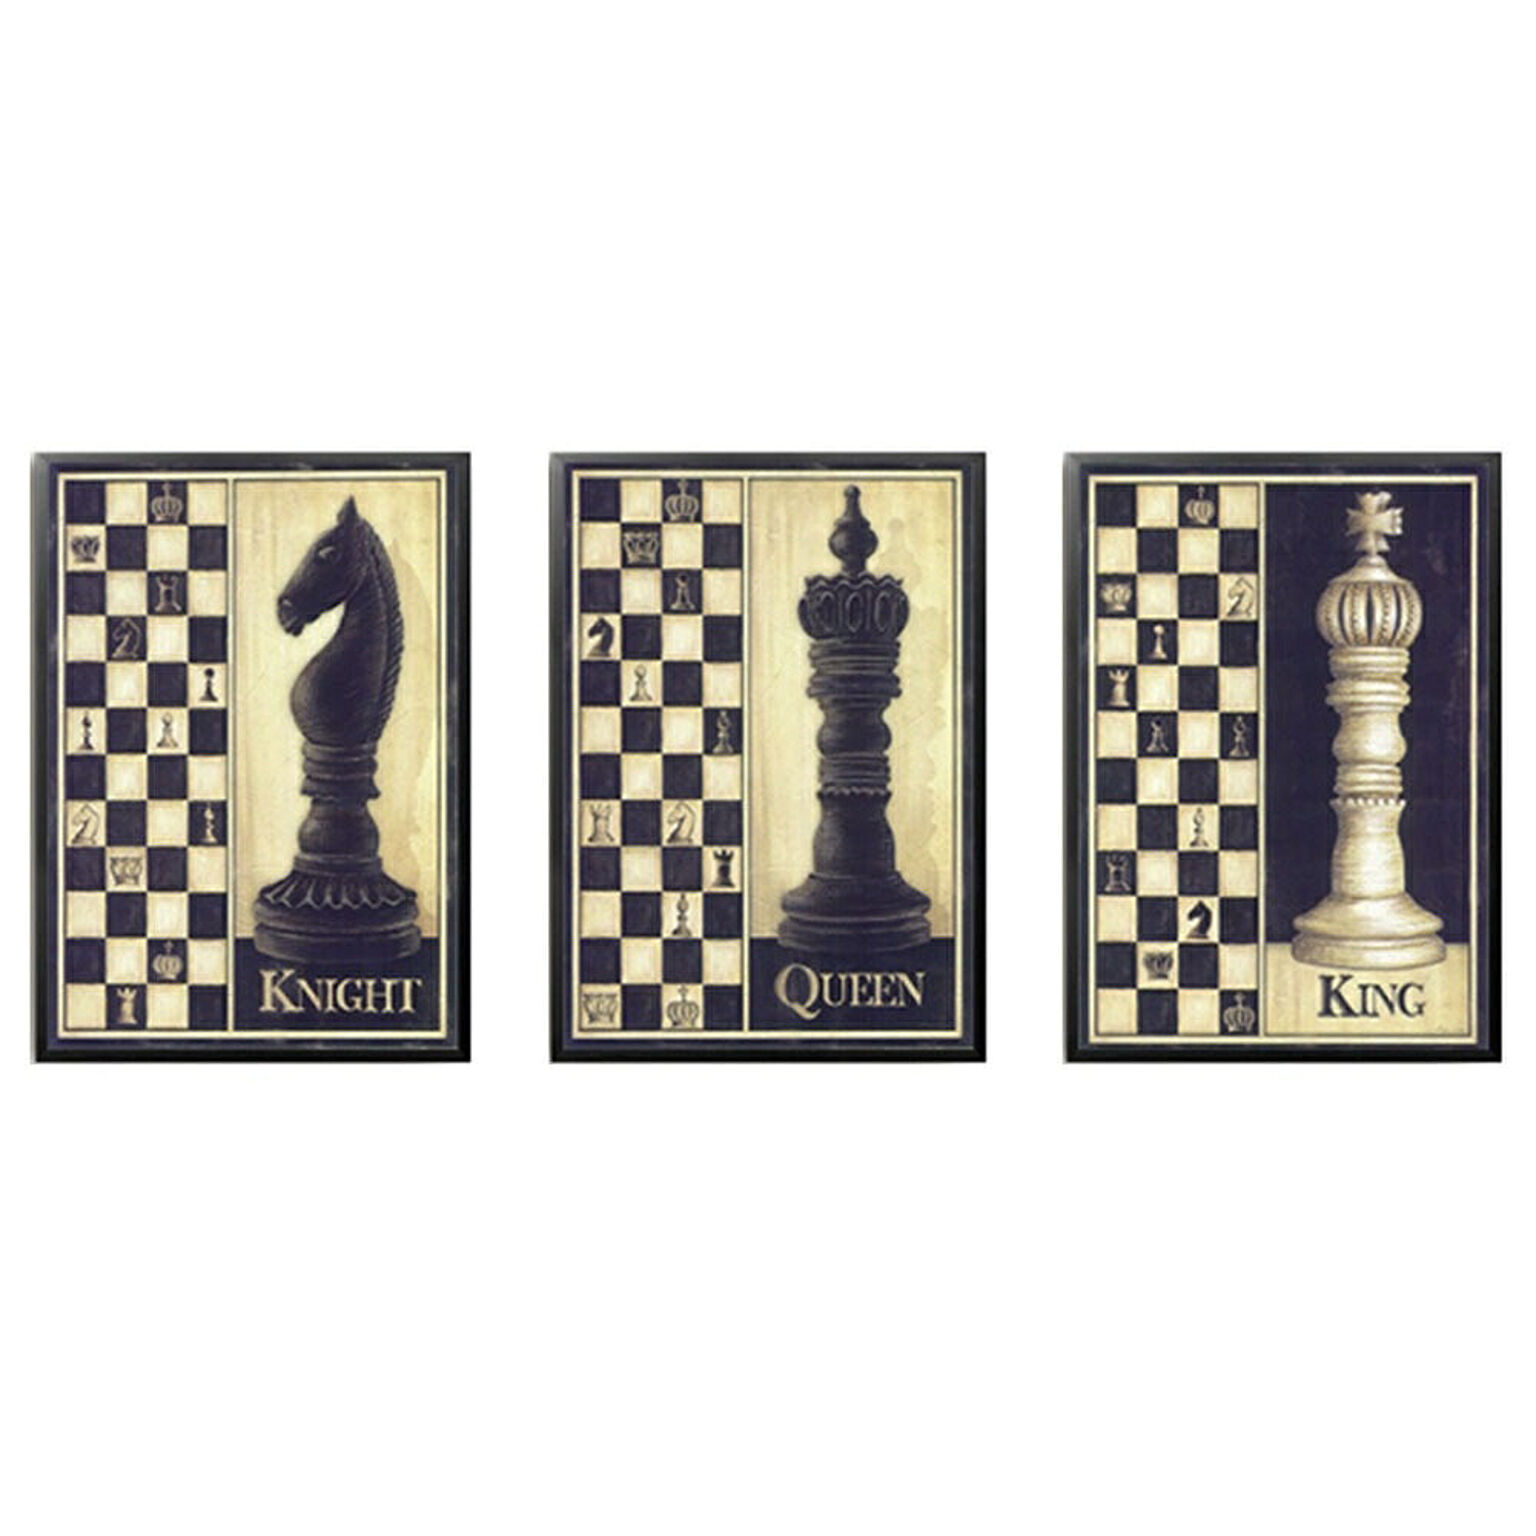 ポスター 3枚セット ナイト クィーン キング アンティーク チェス 駒 デザイン チェス盤 インテリア おしゃれ 大人 デザイン クラシック 通販 Roomclipショッピング